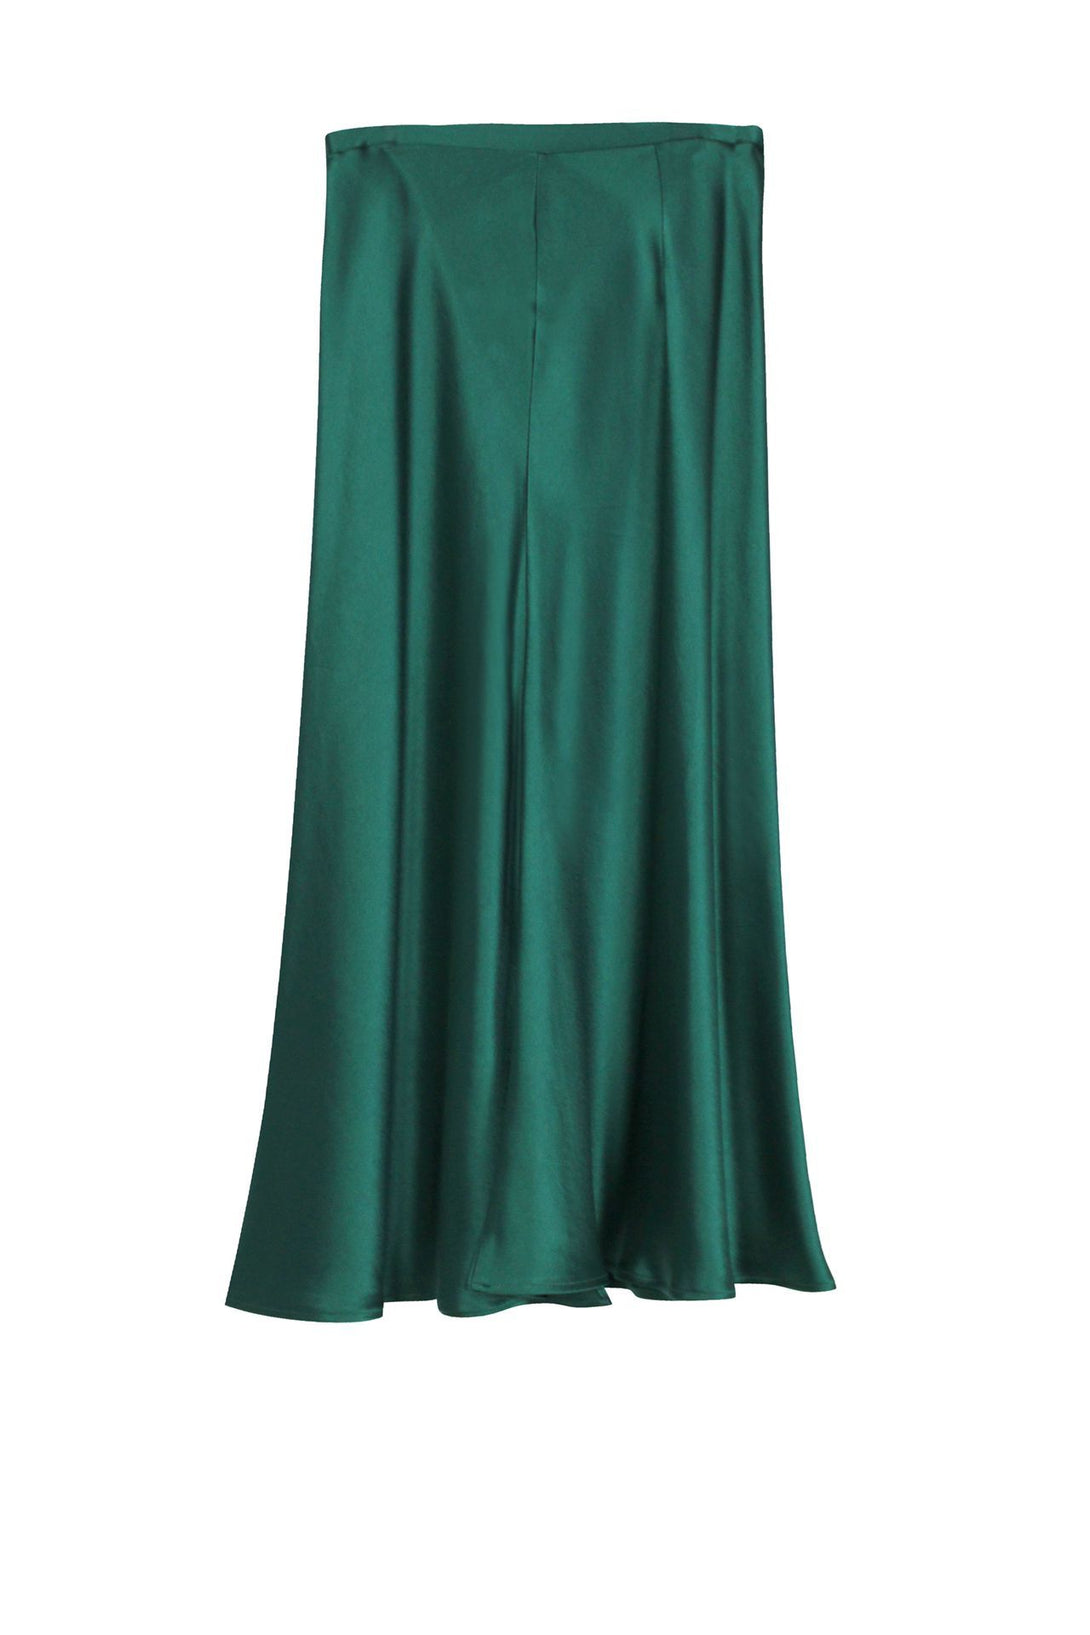 Women-Designer-Green-Skirt-By-Kyle